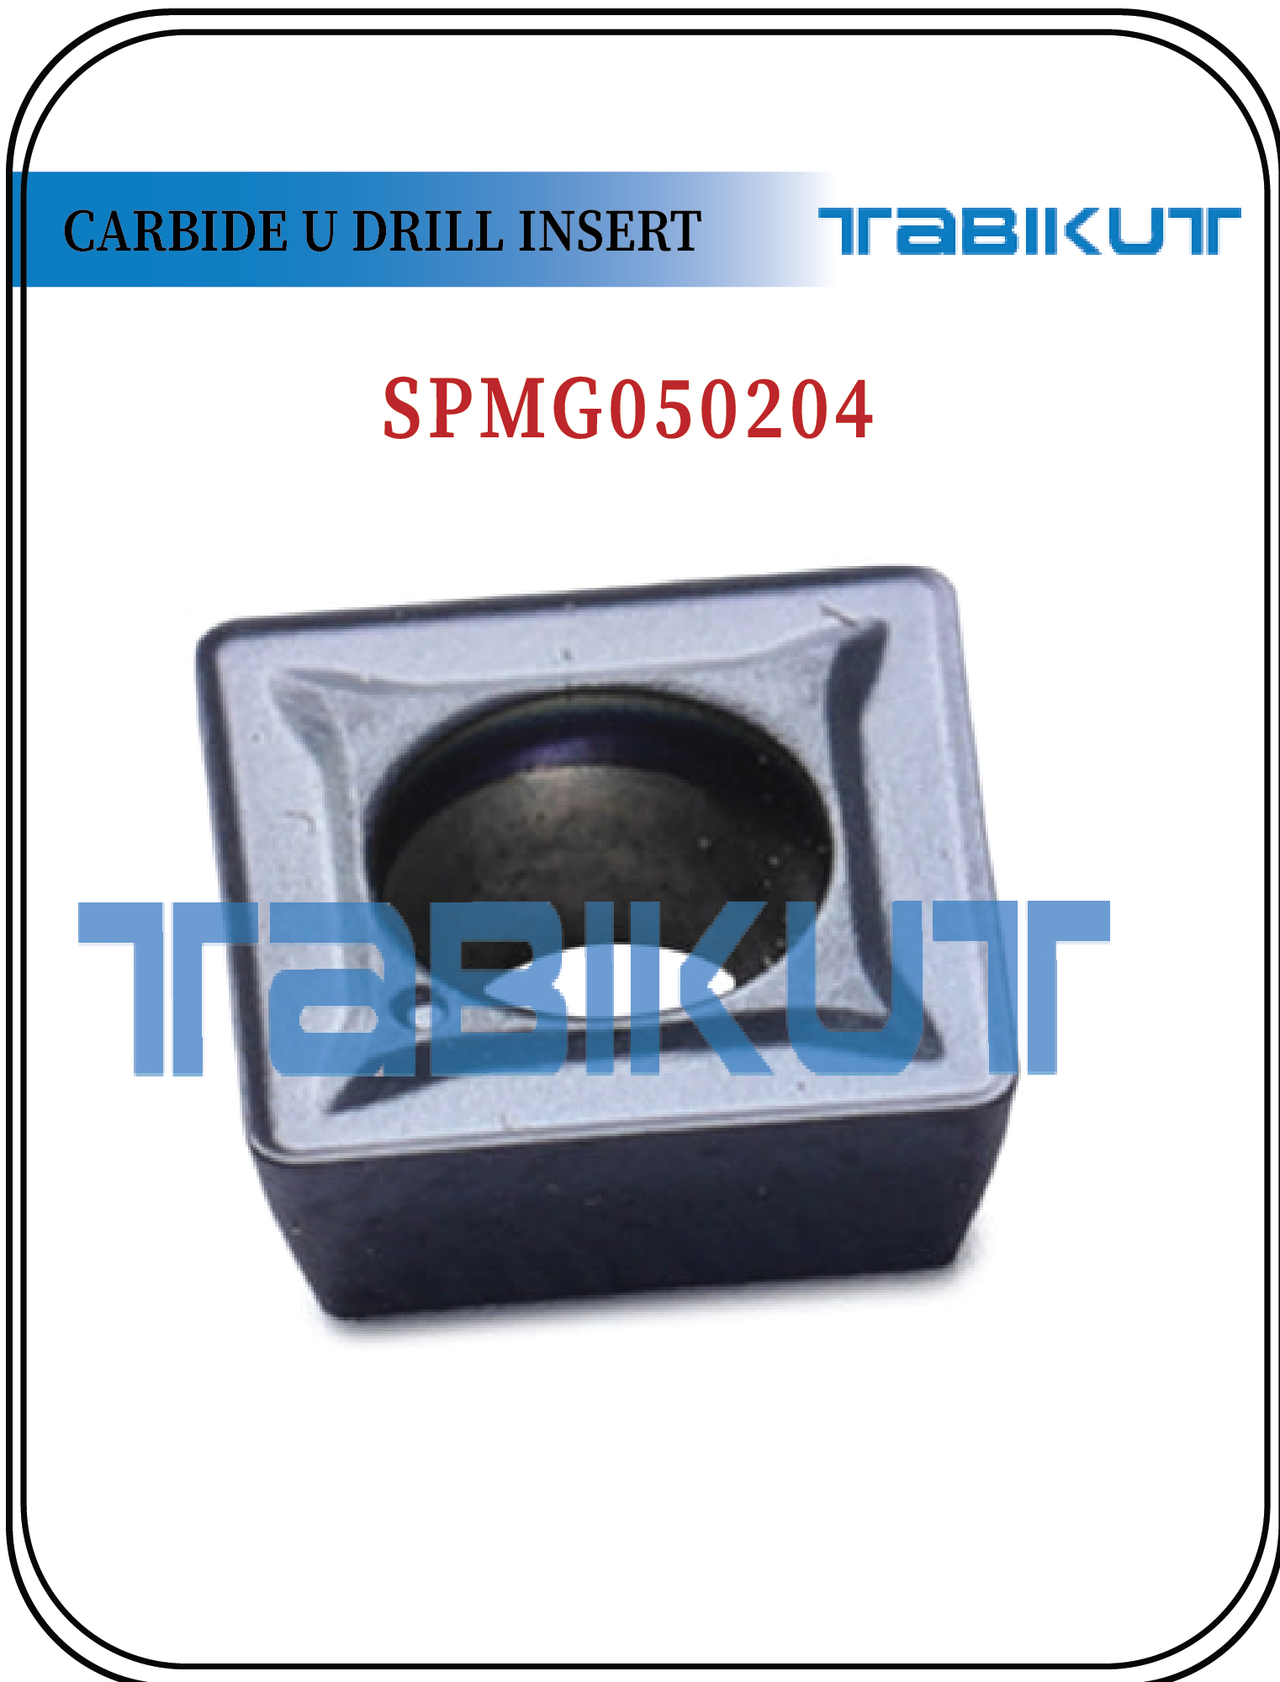 SPMG050204 TABIKUT Carbide drilling Insert